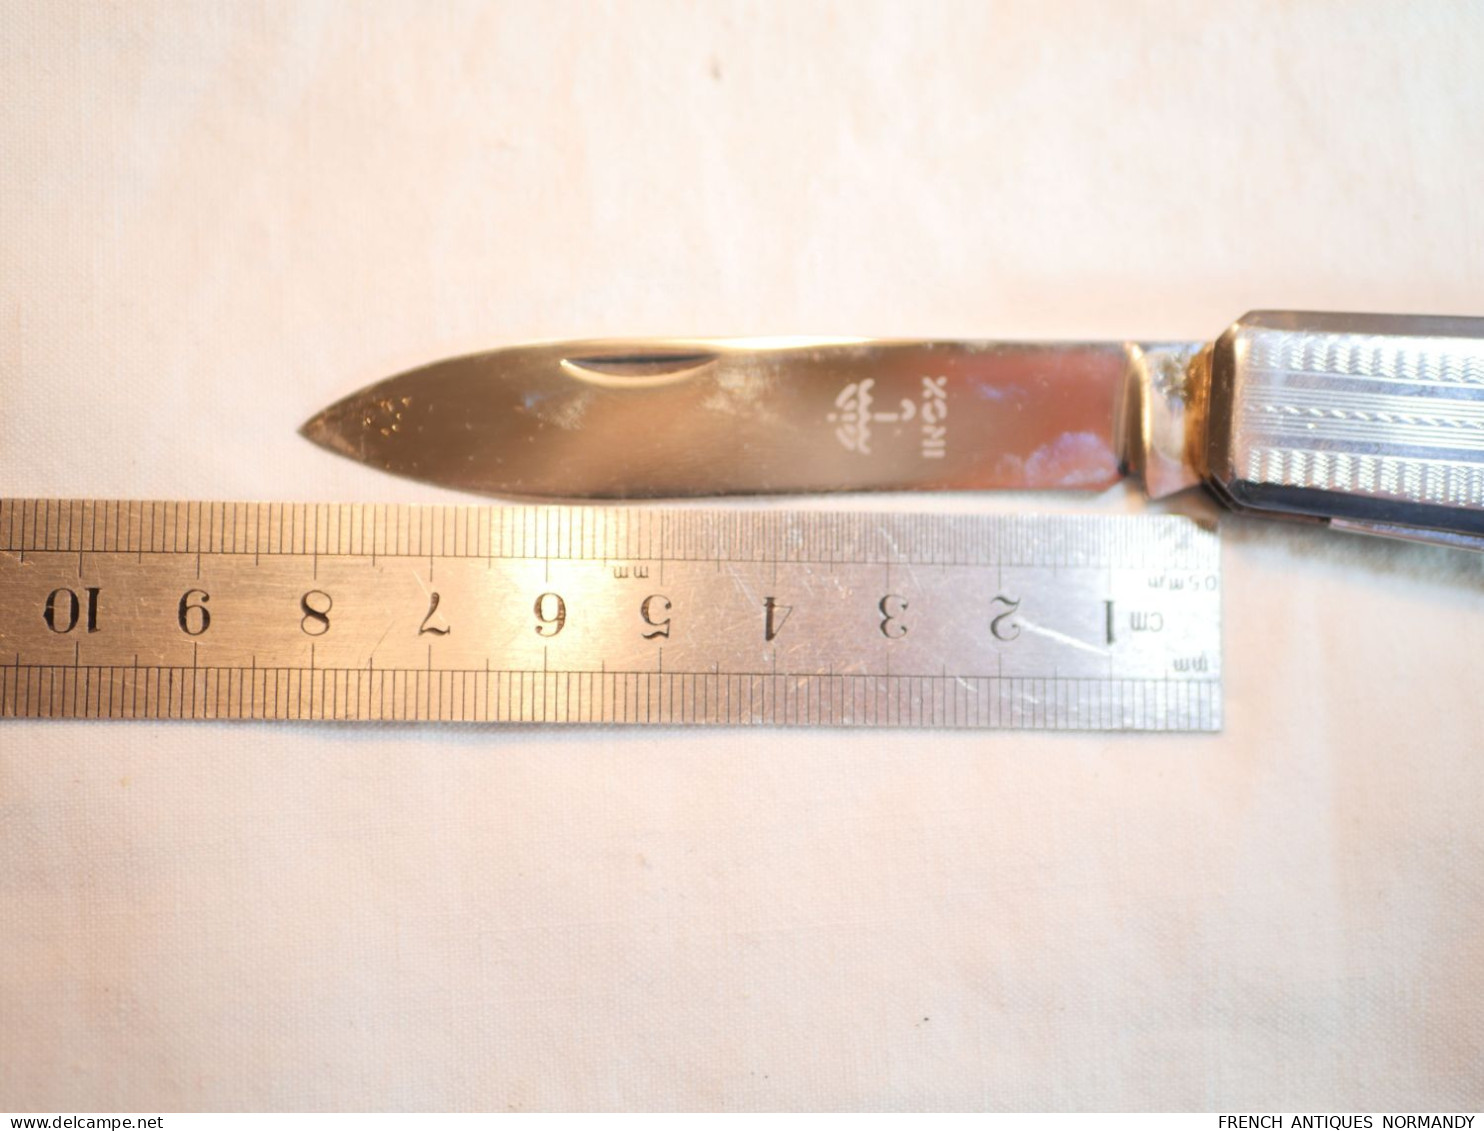 Authentique couteau de poche 6 fonctions Thiernois pliant "Parapluie à l'Epreuve" type 100mm